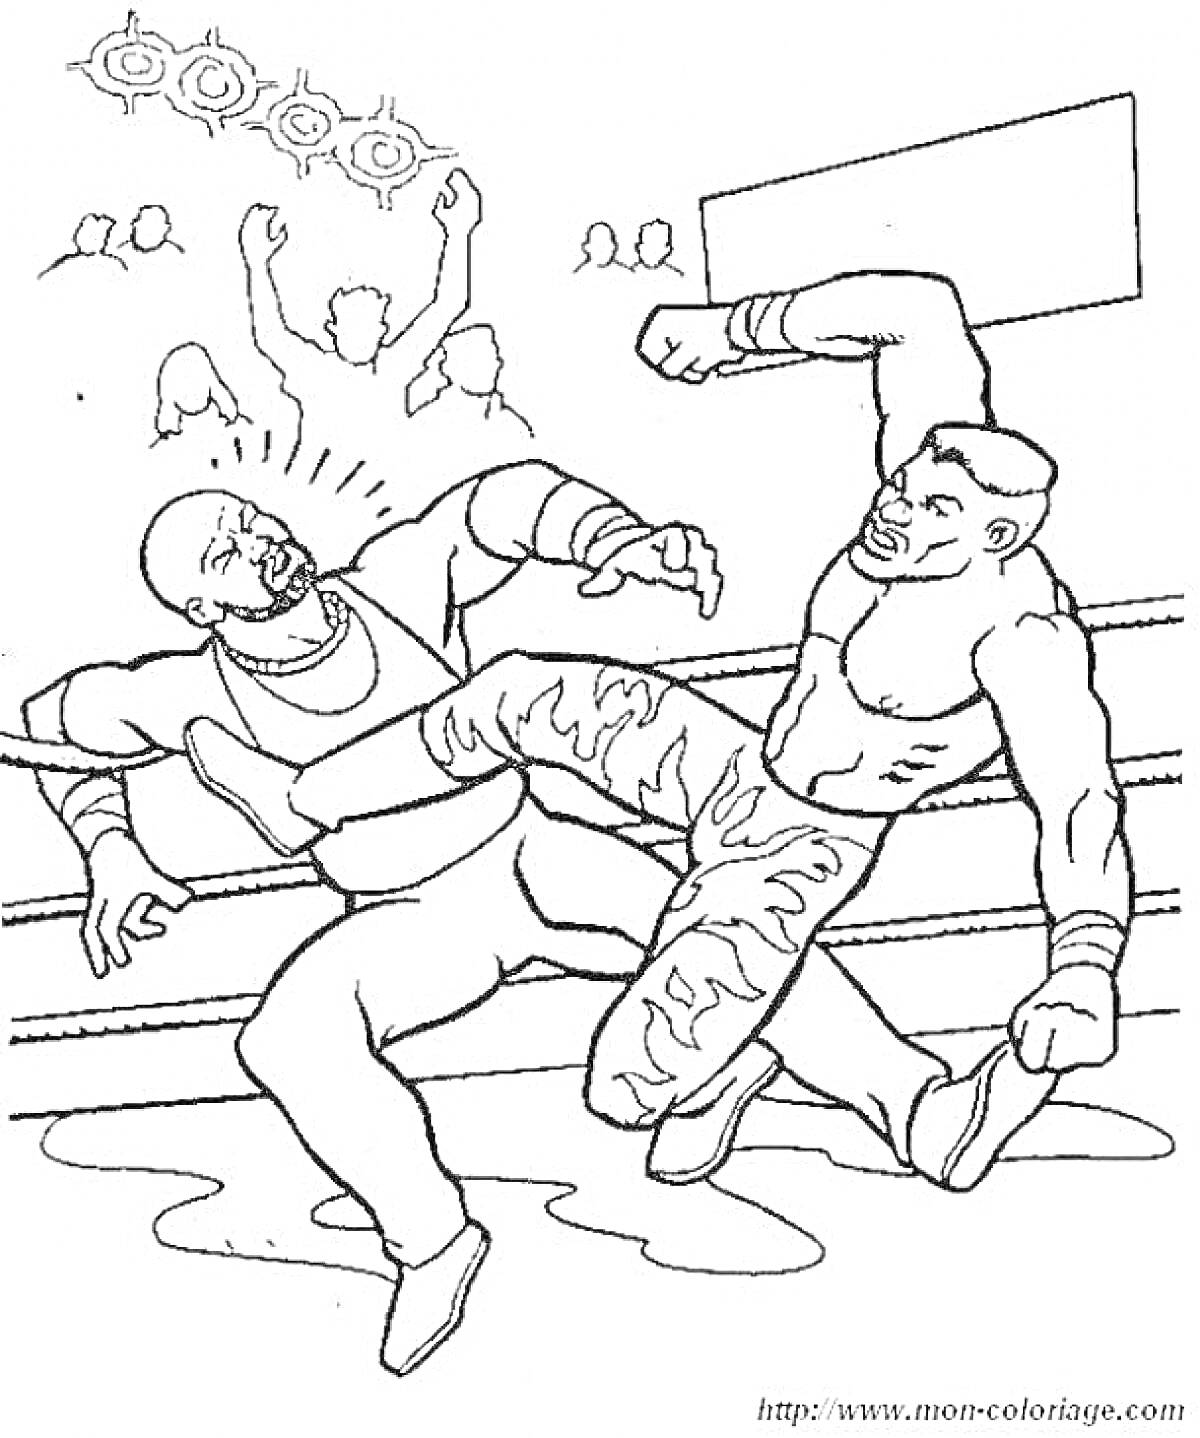 Раскраска Боксер в шортах с узорами наносит удар другому боксеру возле канатов ринга, зрители на заднем фоне